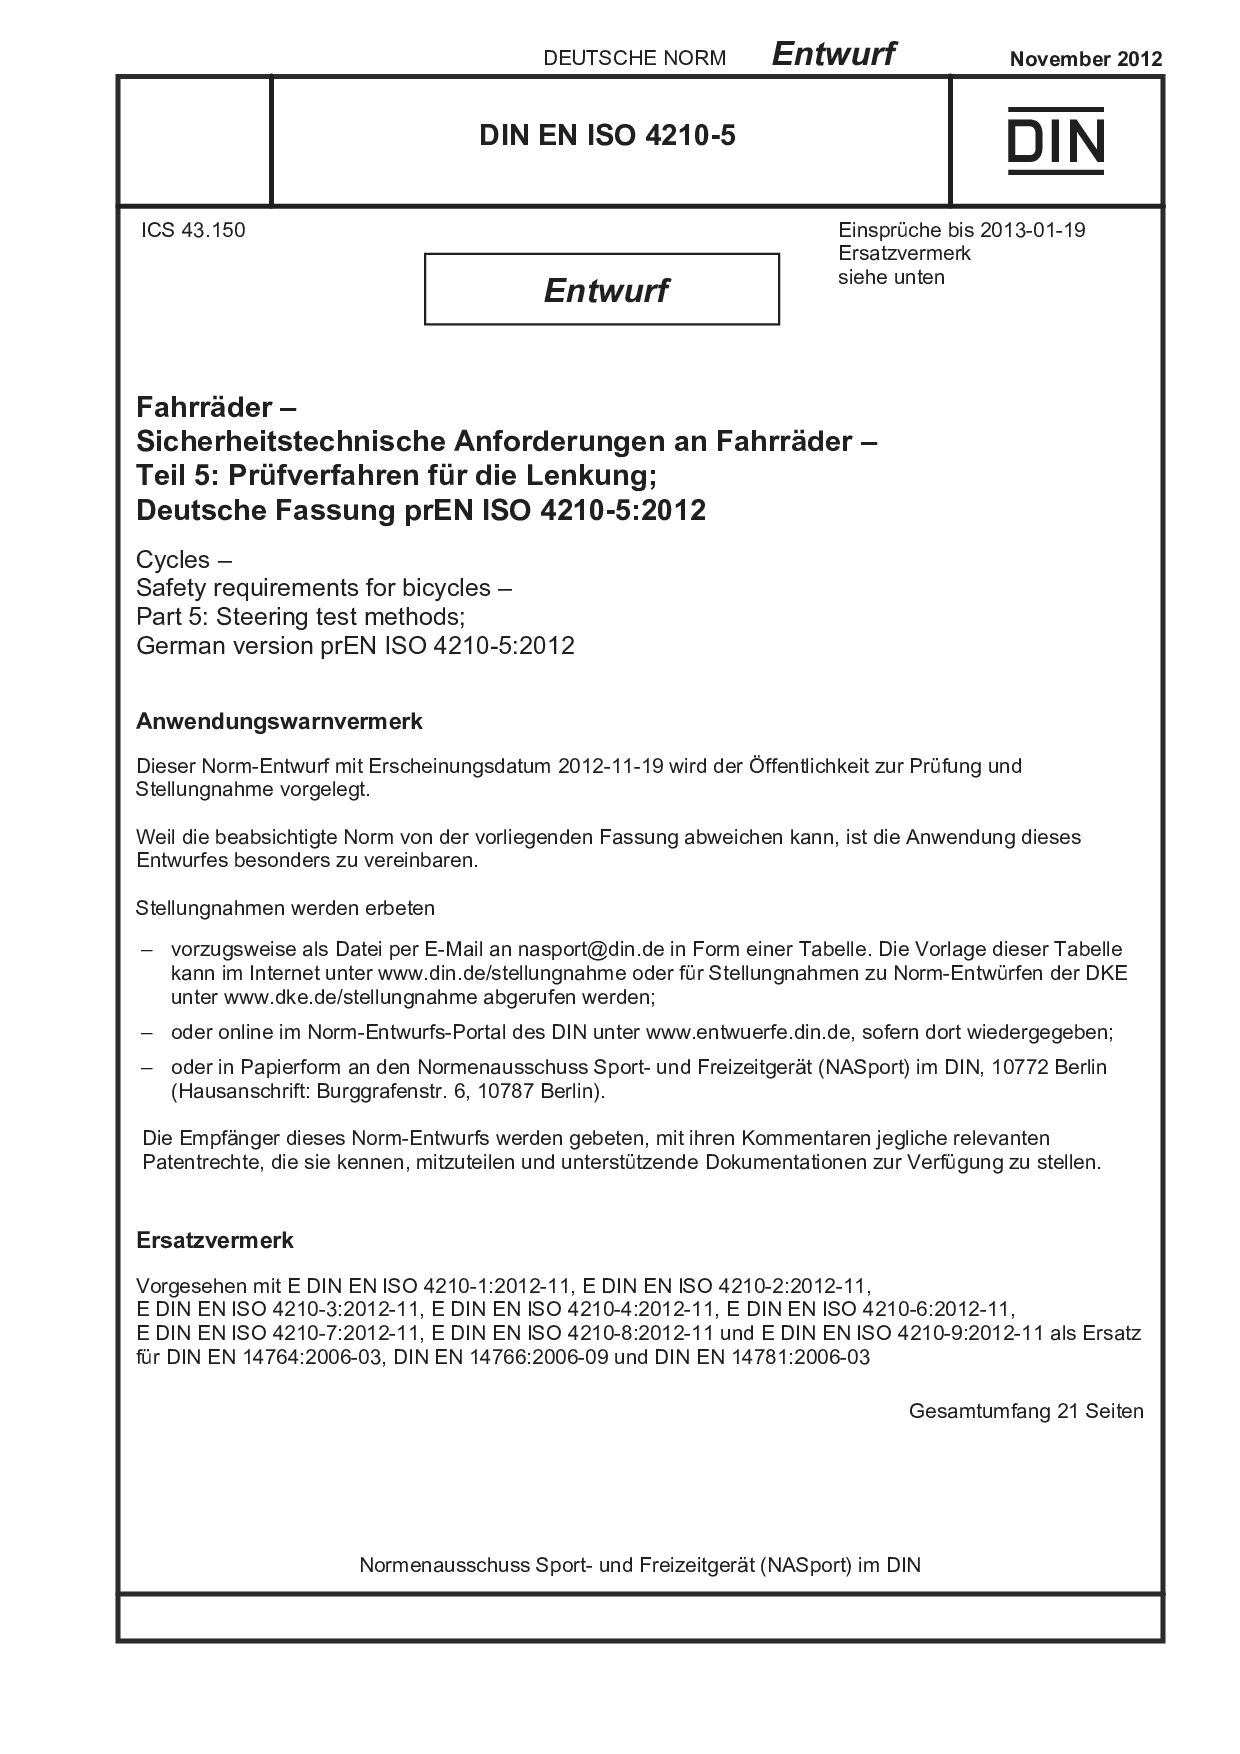 DIN EN ISO 4210-5 E:2012-11封面图